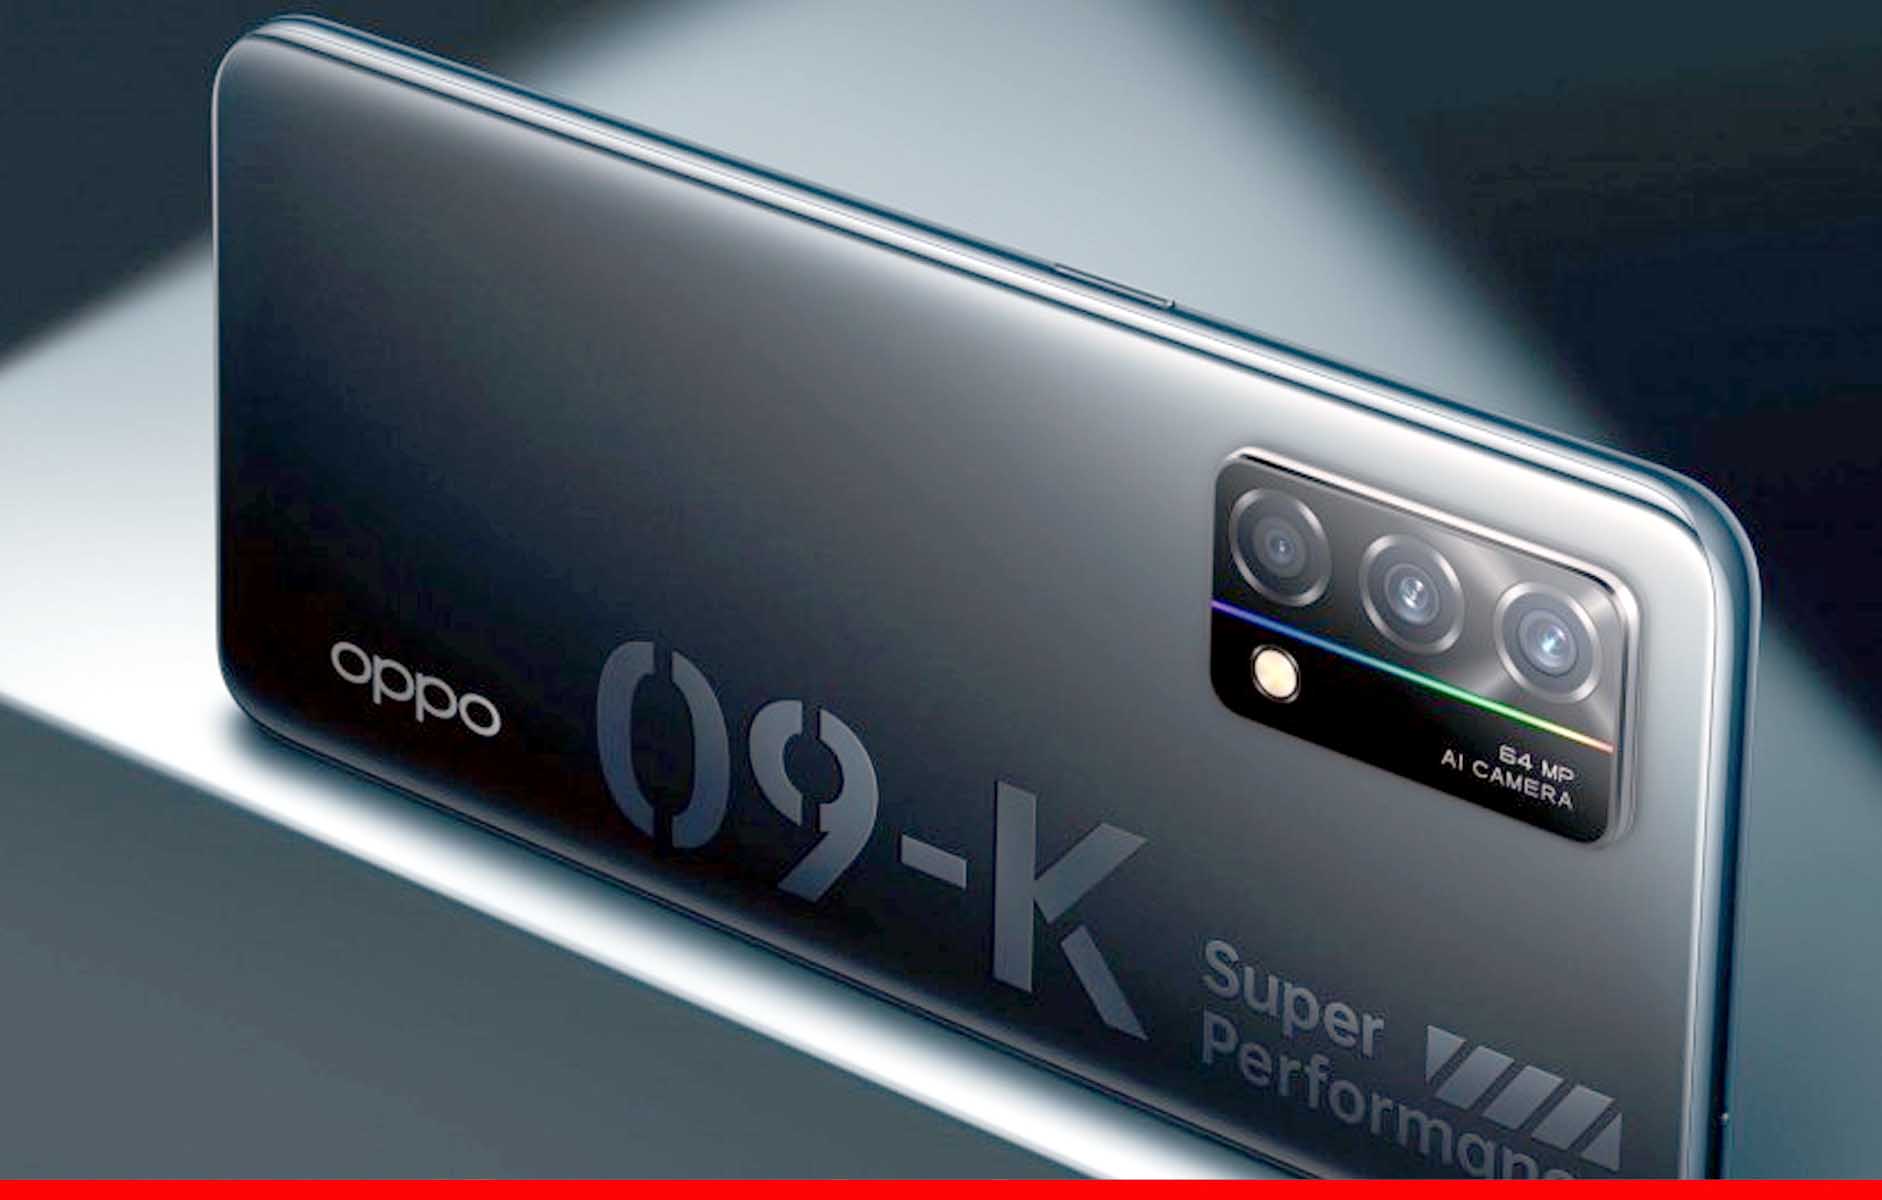 ओप्पो ला रहा नया स्मार्टफोन Oppo K9 5G डिस्प्ले और 64MP कैमरा है खूबी